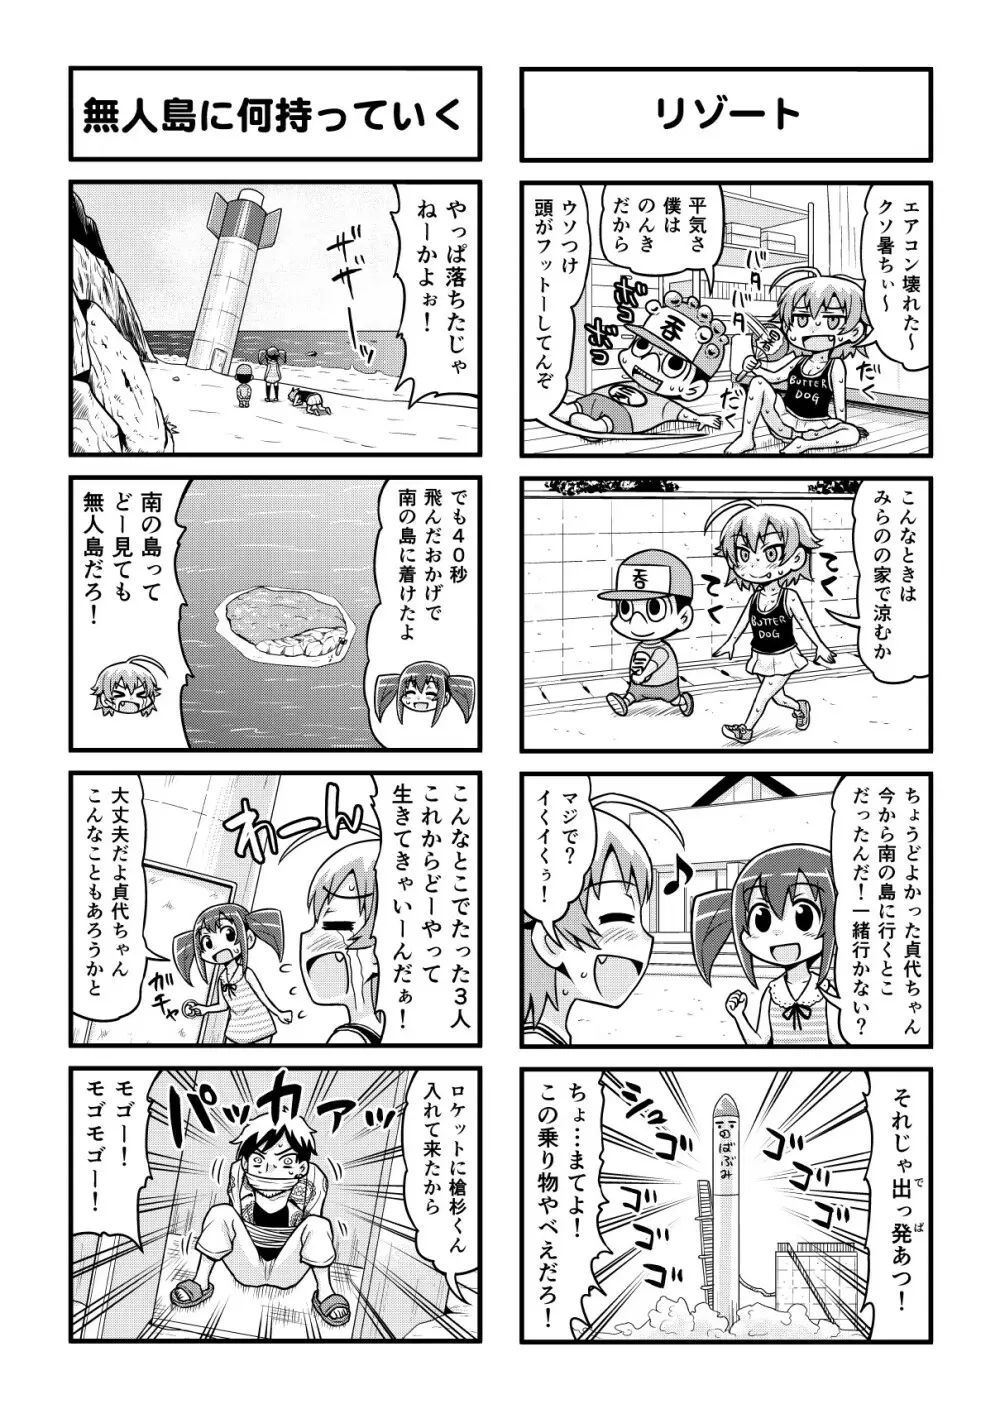 のんきBOY 1-48 - page284